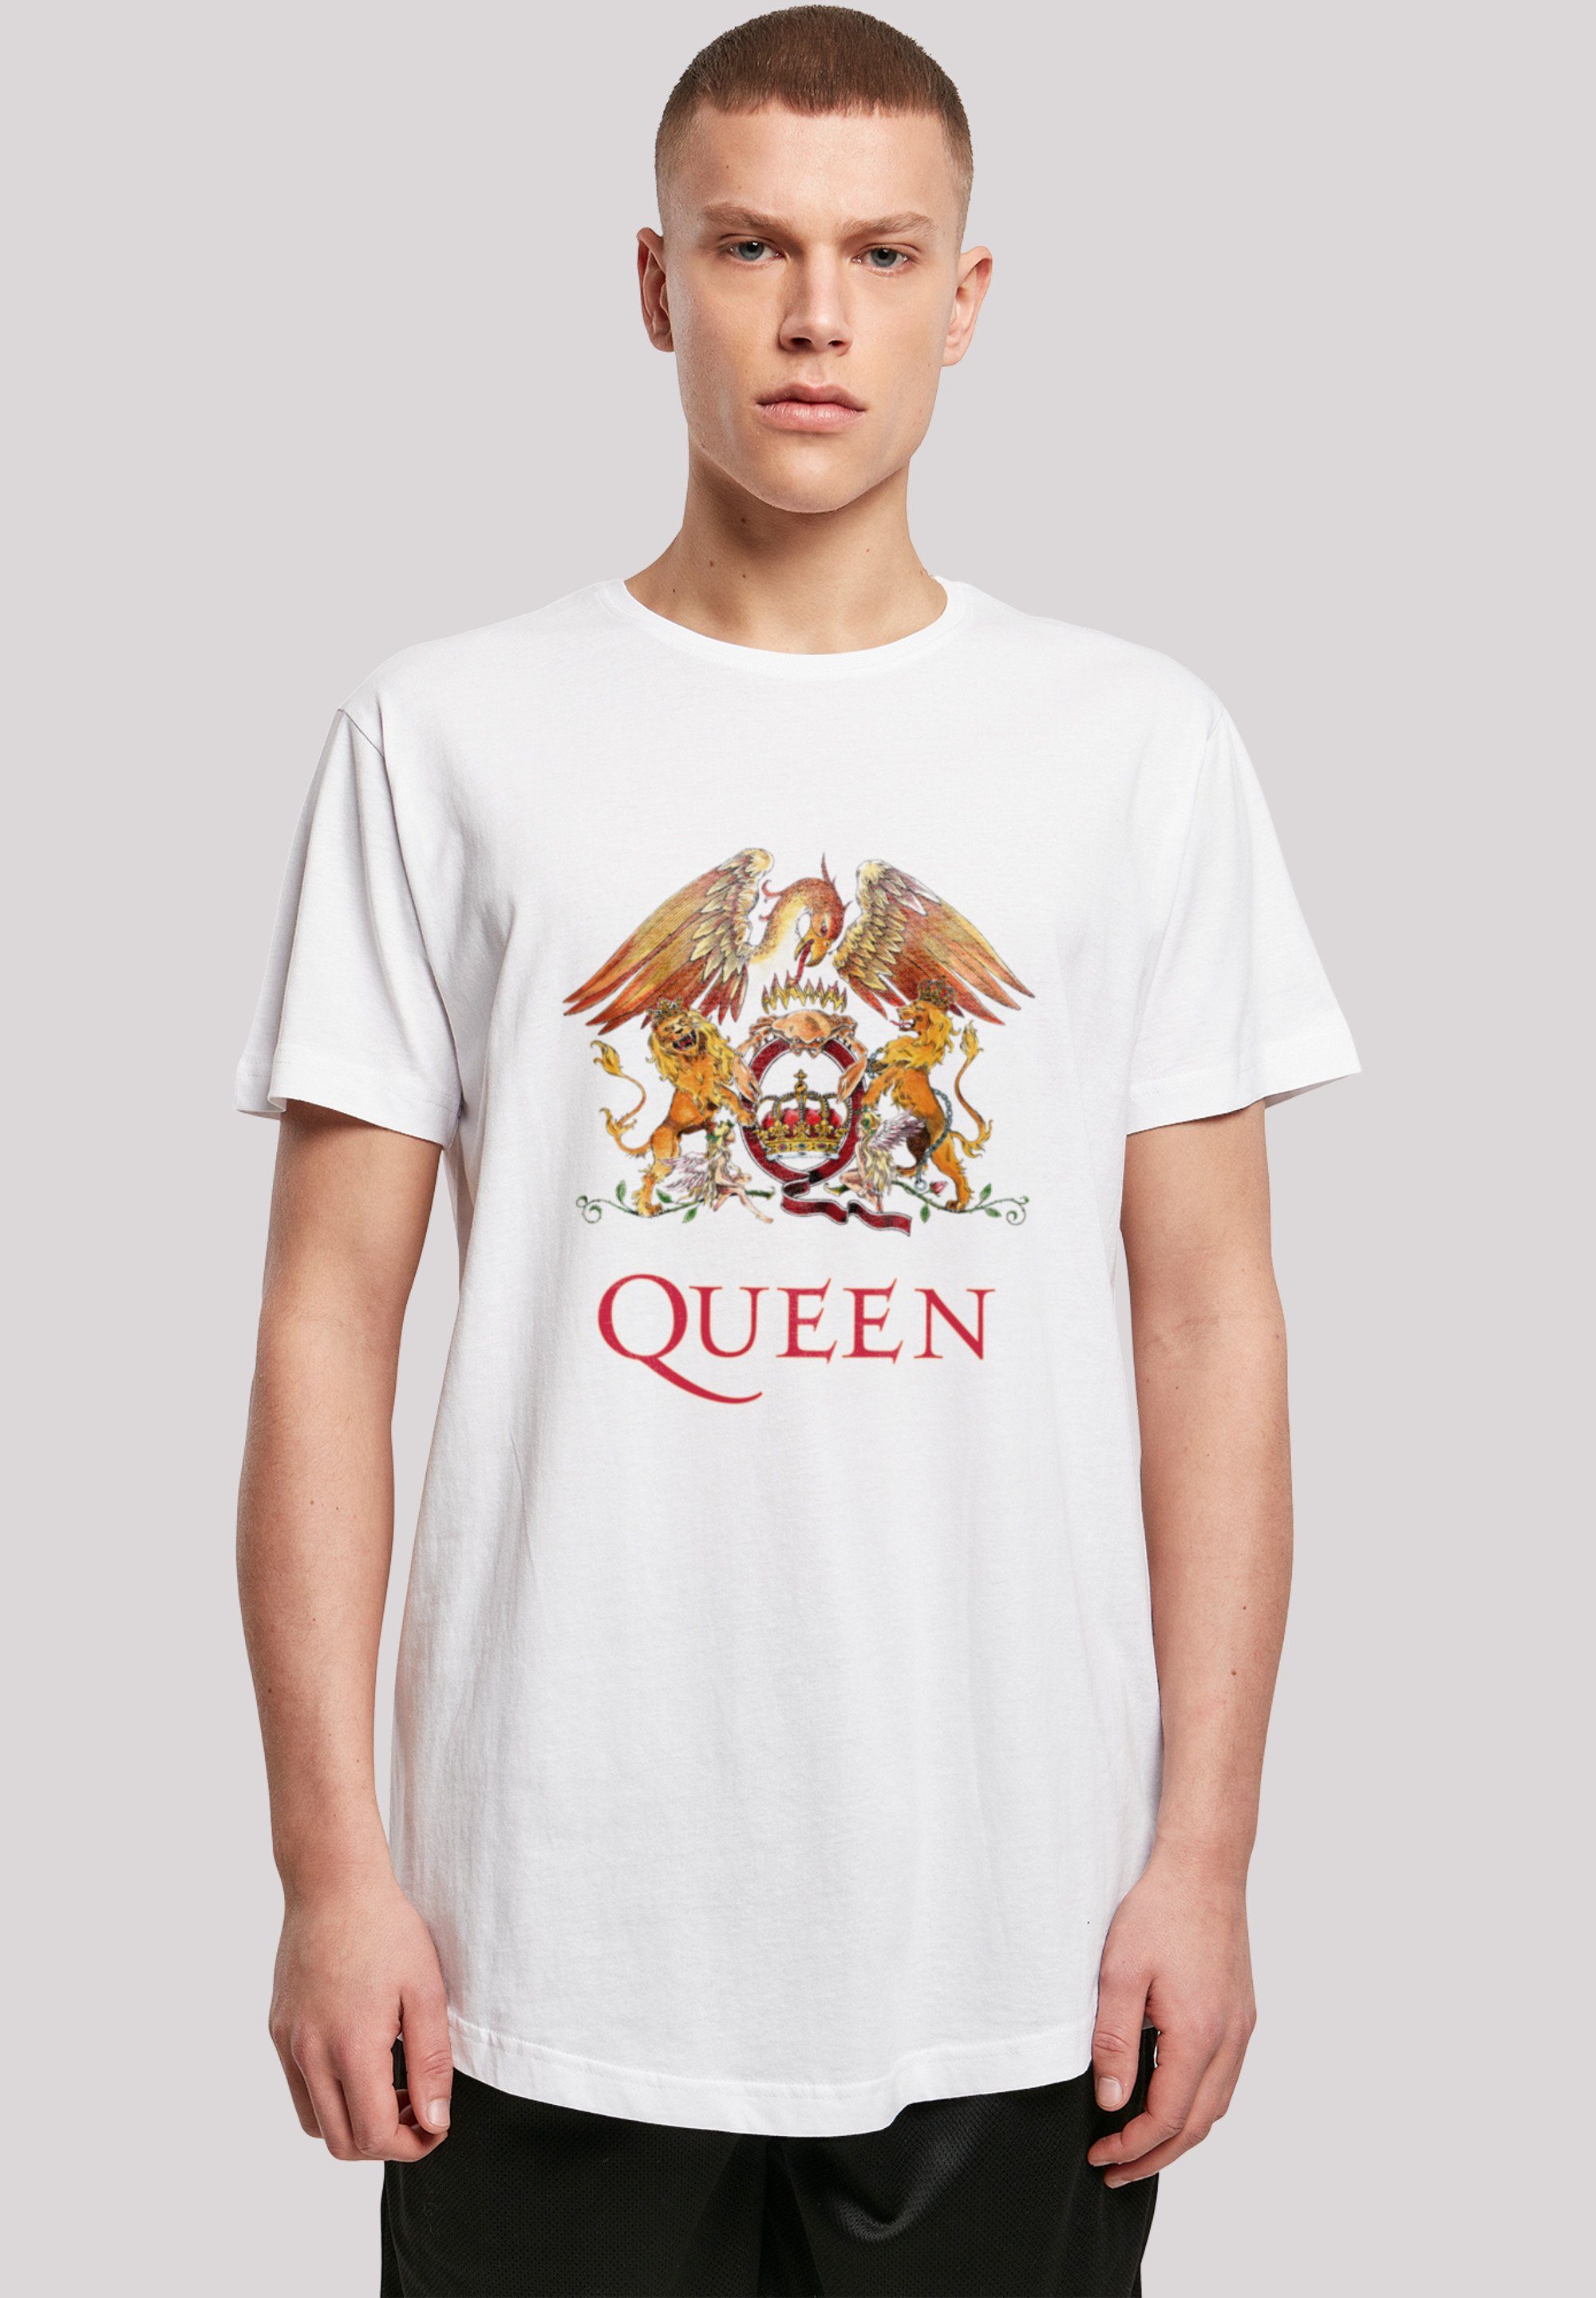 F4NT4STIC T-Shirt Queen Rockband Classic weiß Print Black Crest